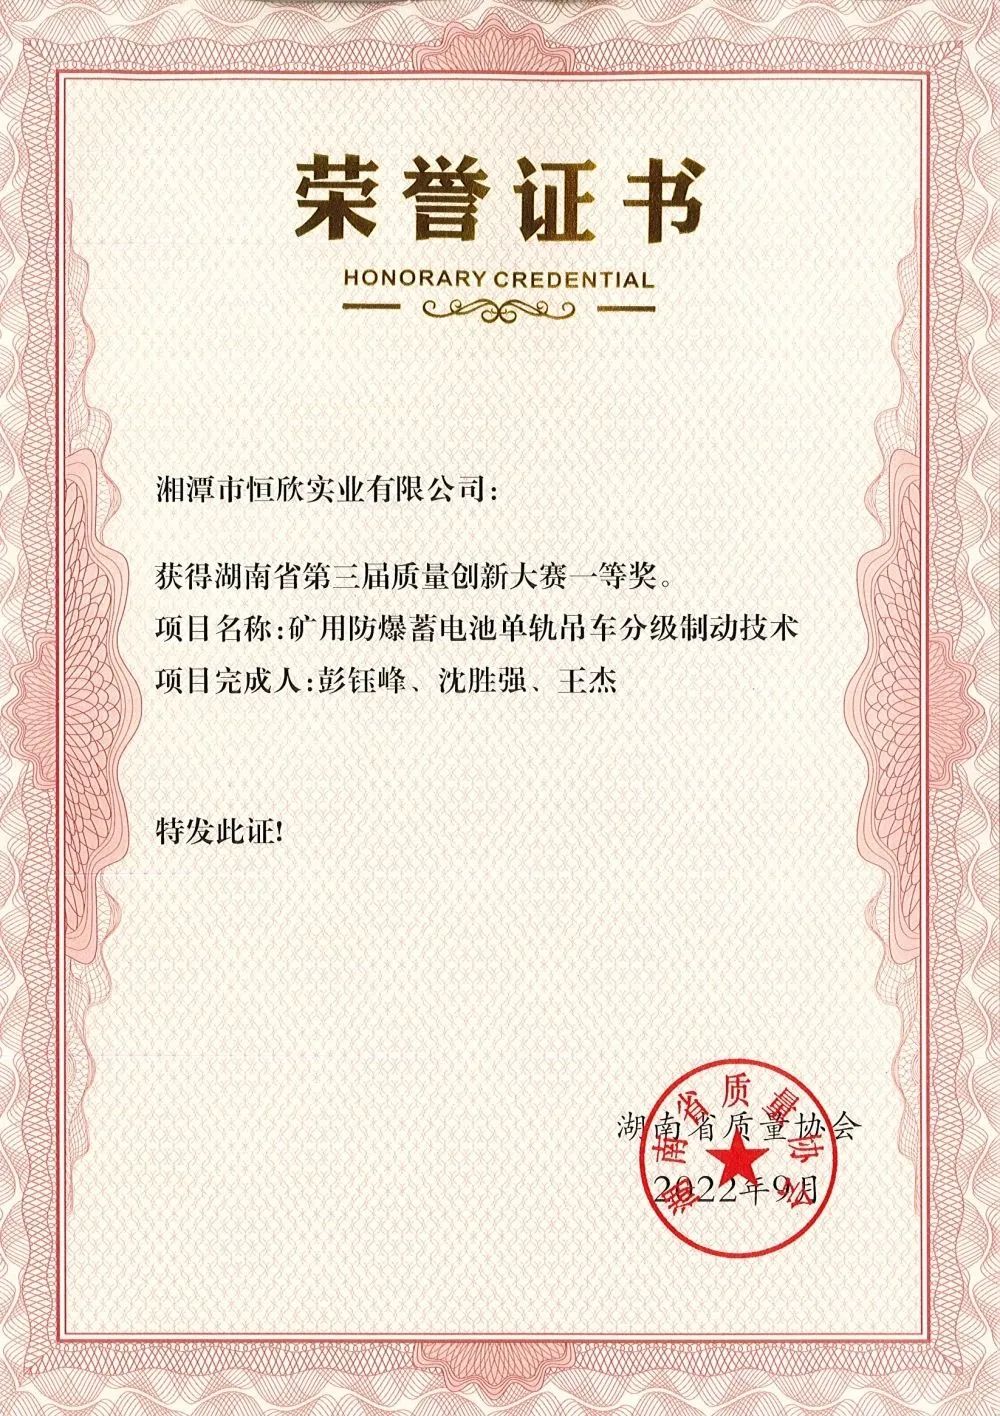 榮獲湖南省第三屆質量創新大賽一等獎